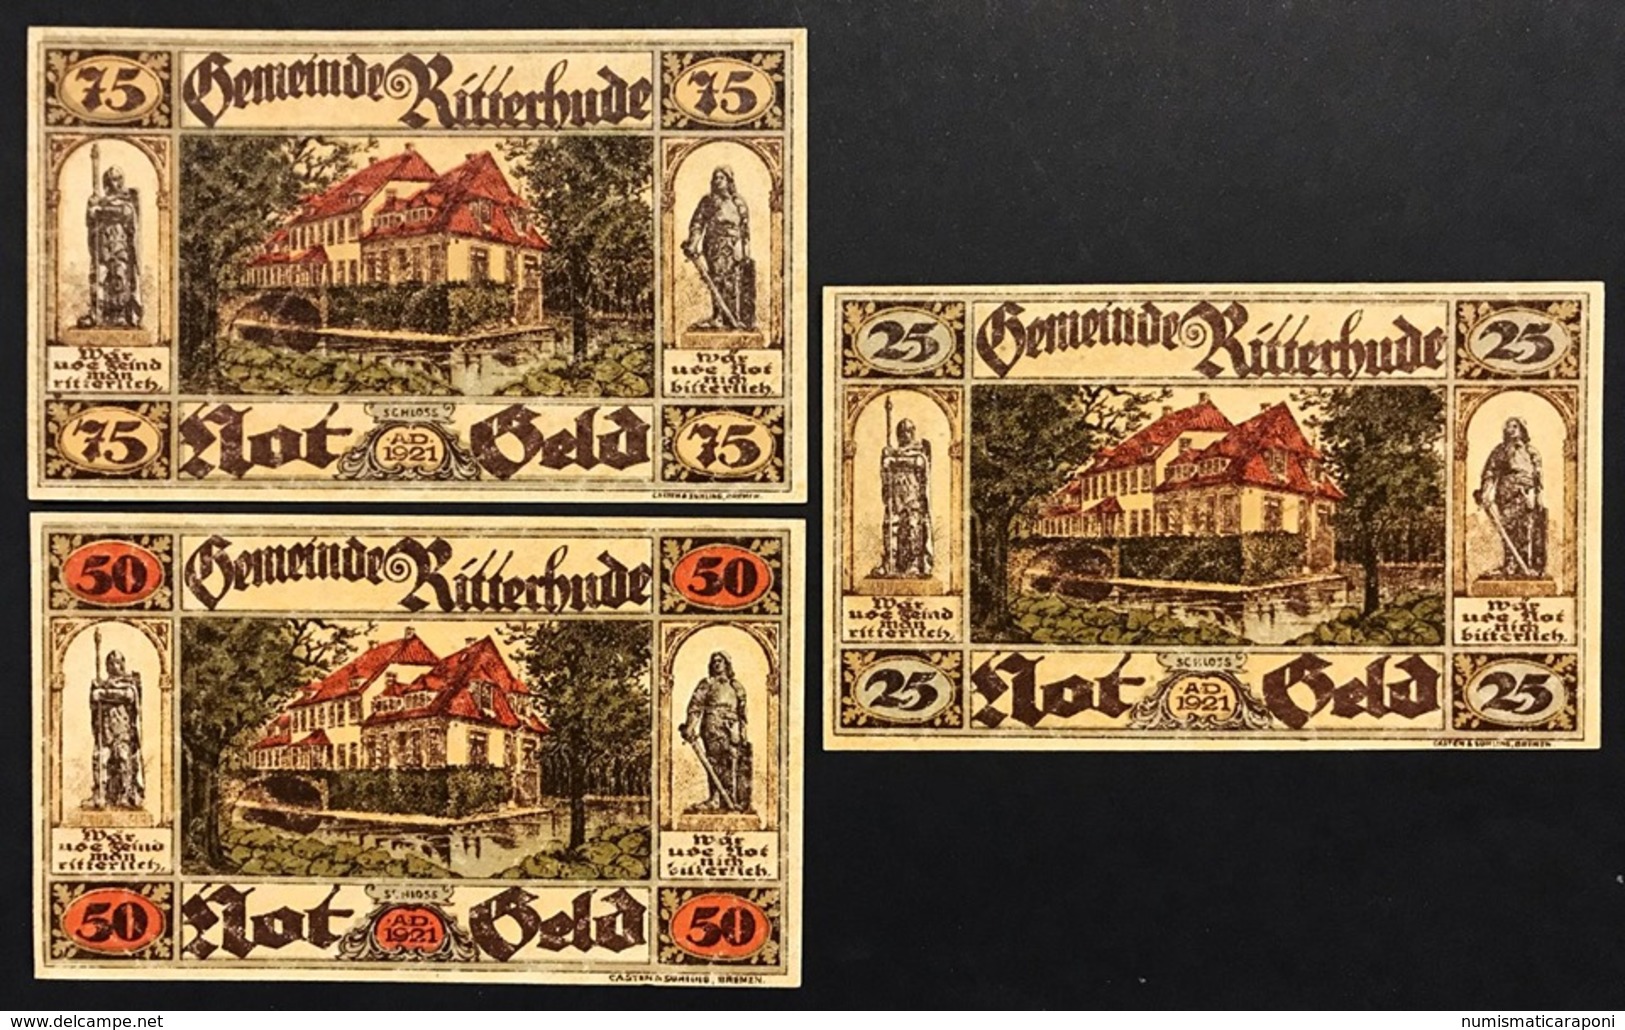 GERMANIA ALEMANIA GERMANY Notgeld Ritterhude 25 50 75  Pfennig 1921 ( 3 Pz ) Lotto 1940 - Deutsche Golddiskontbank